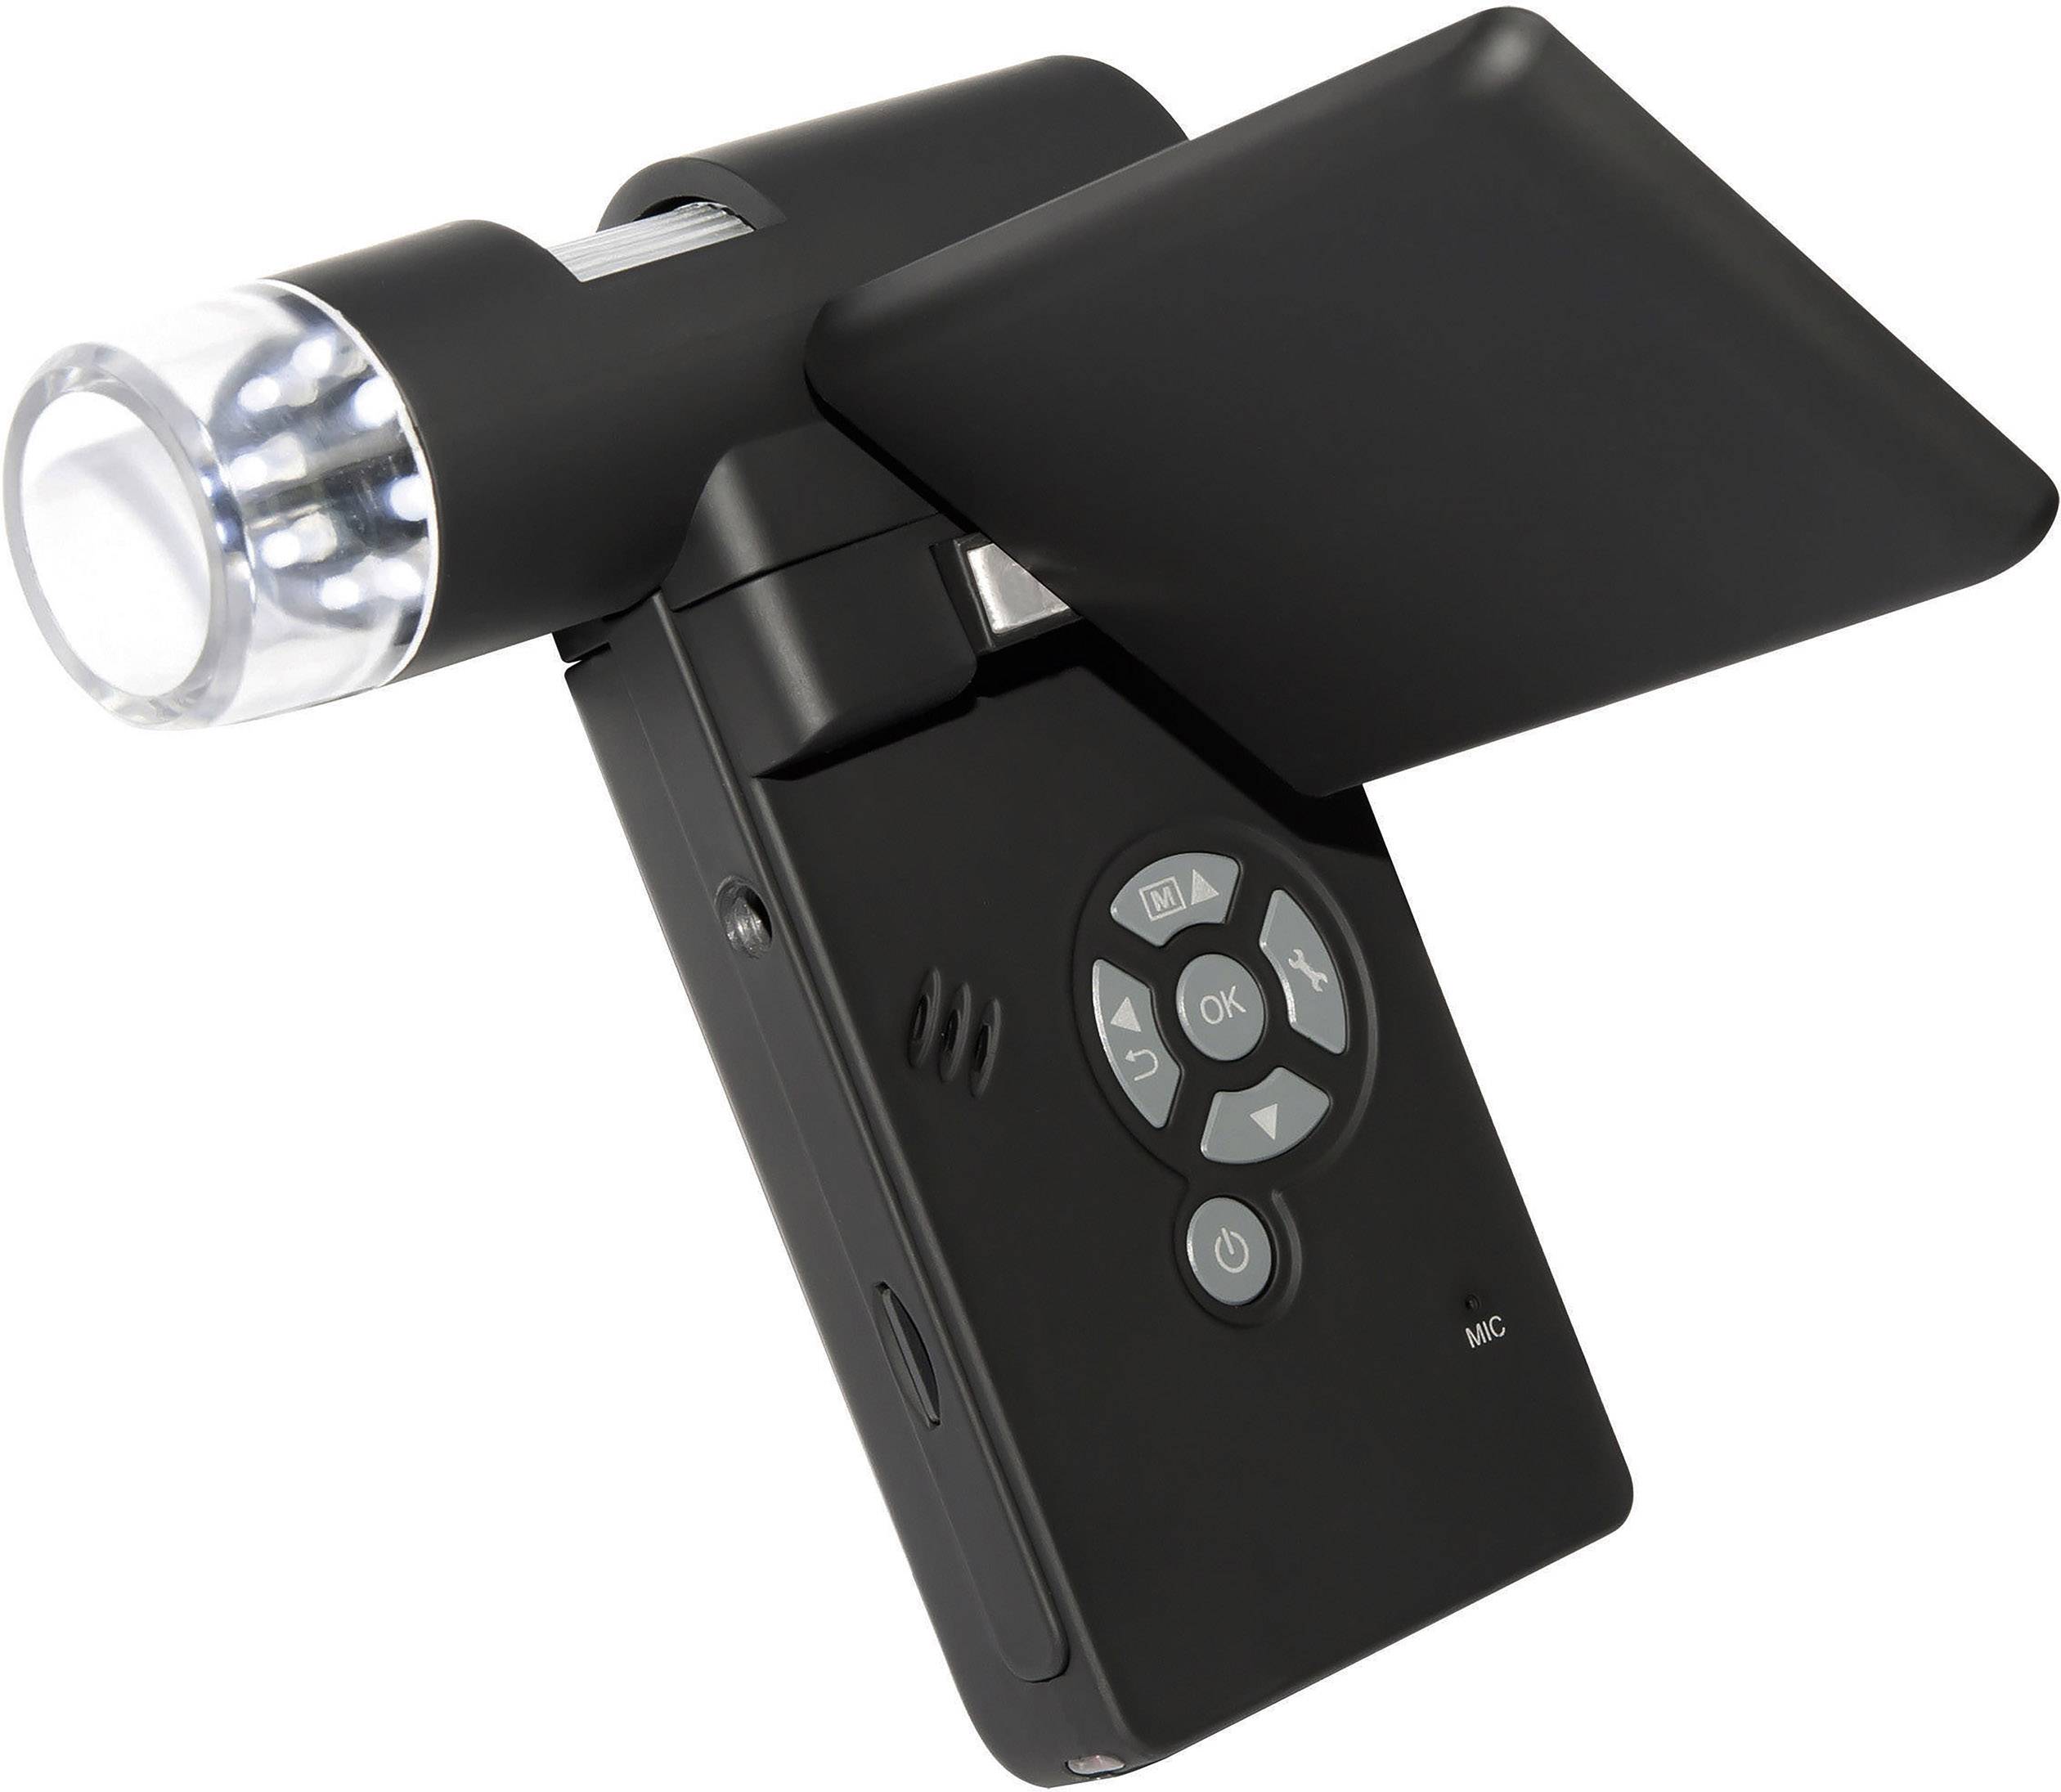 TOOLCRAFT USB Mikroskop mit Monitor 5 Mio. Pixel Digitale Vergrößerung (max.): 500 x